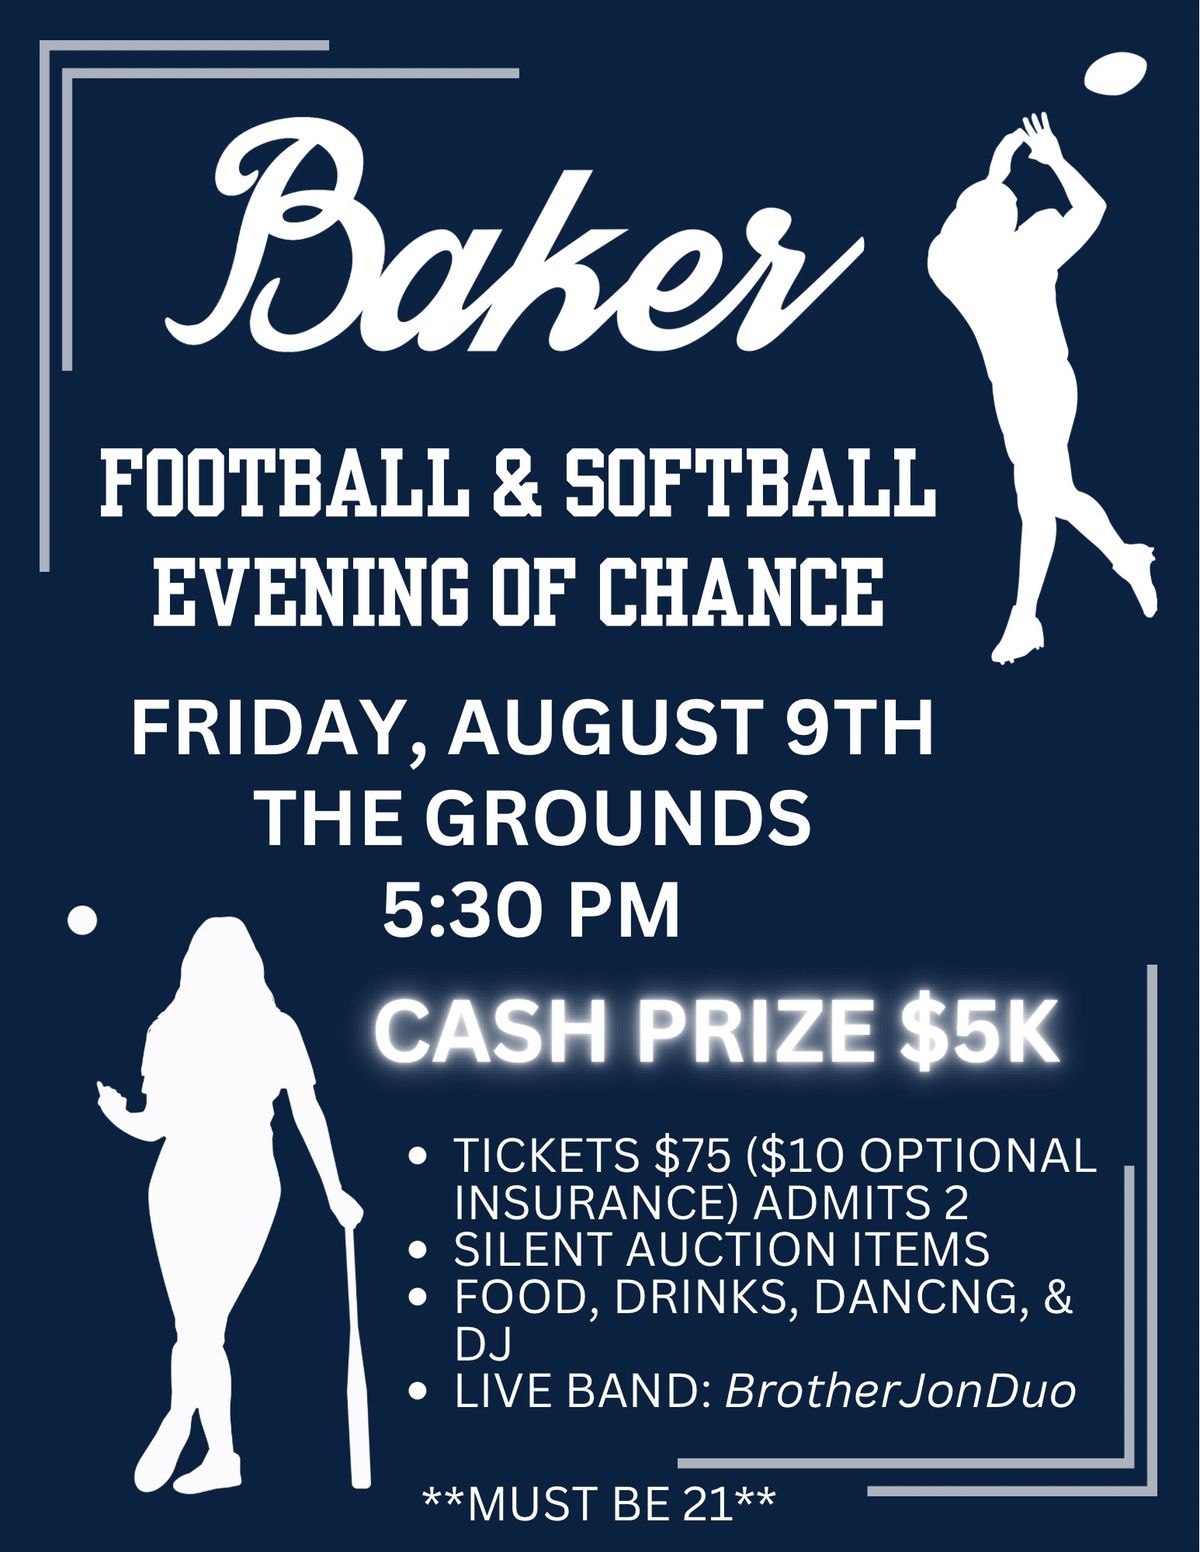 Baker Football & Softball Evening of Chance 